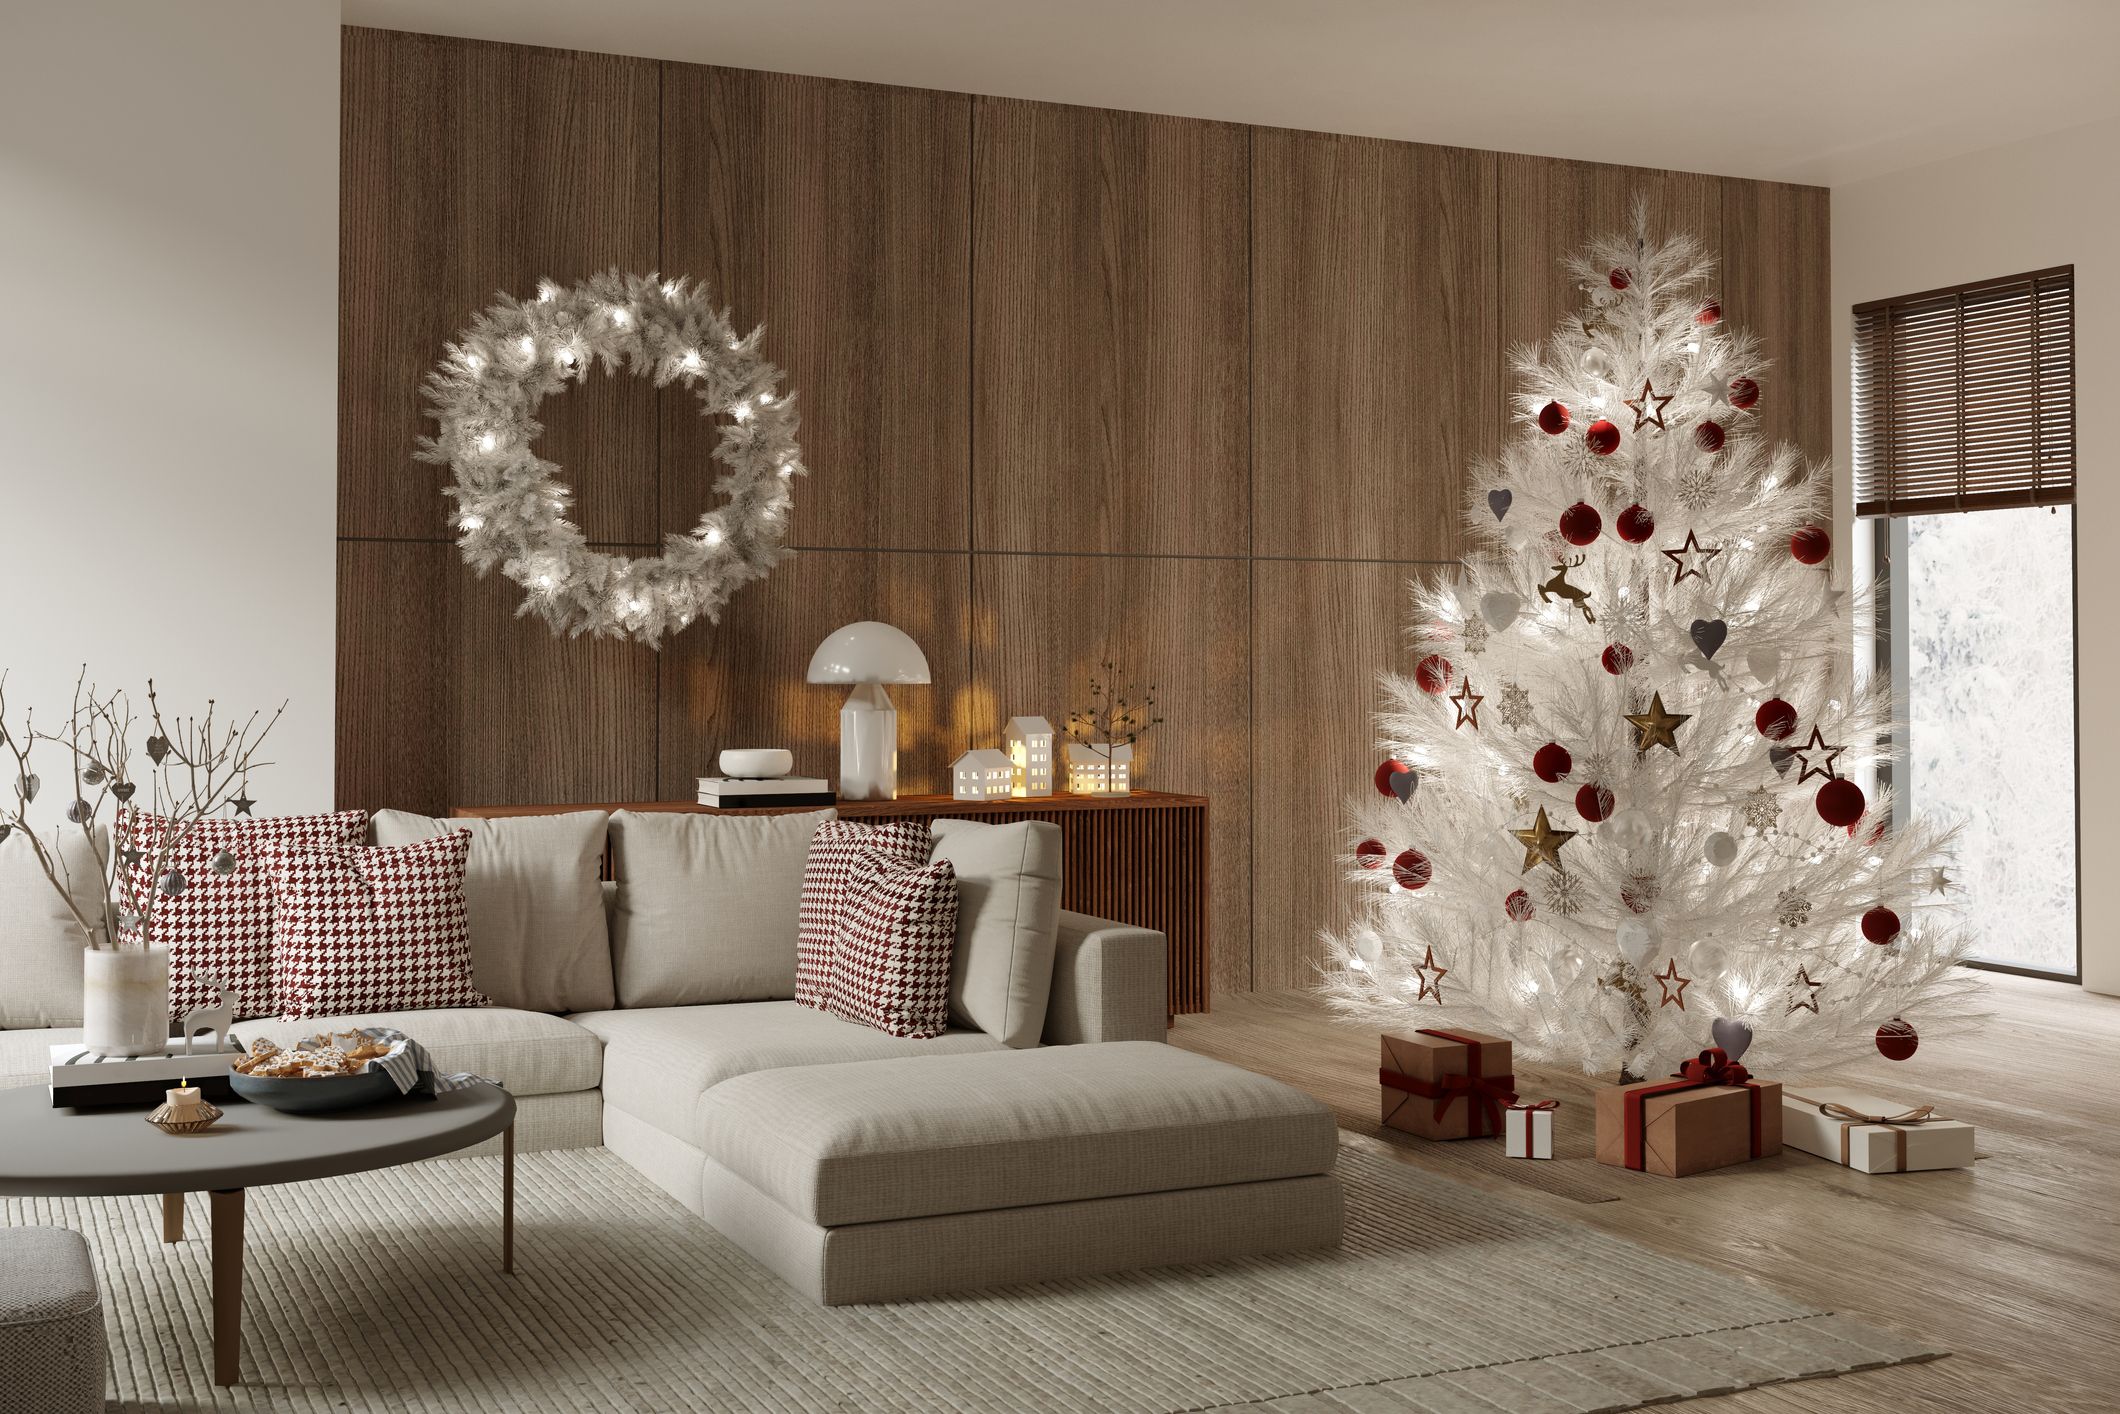 Cómo decorar árboles de Navidad blancos - 15 ideas